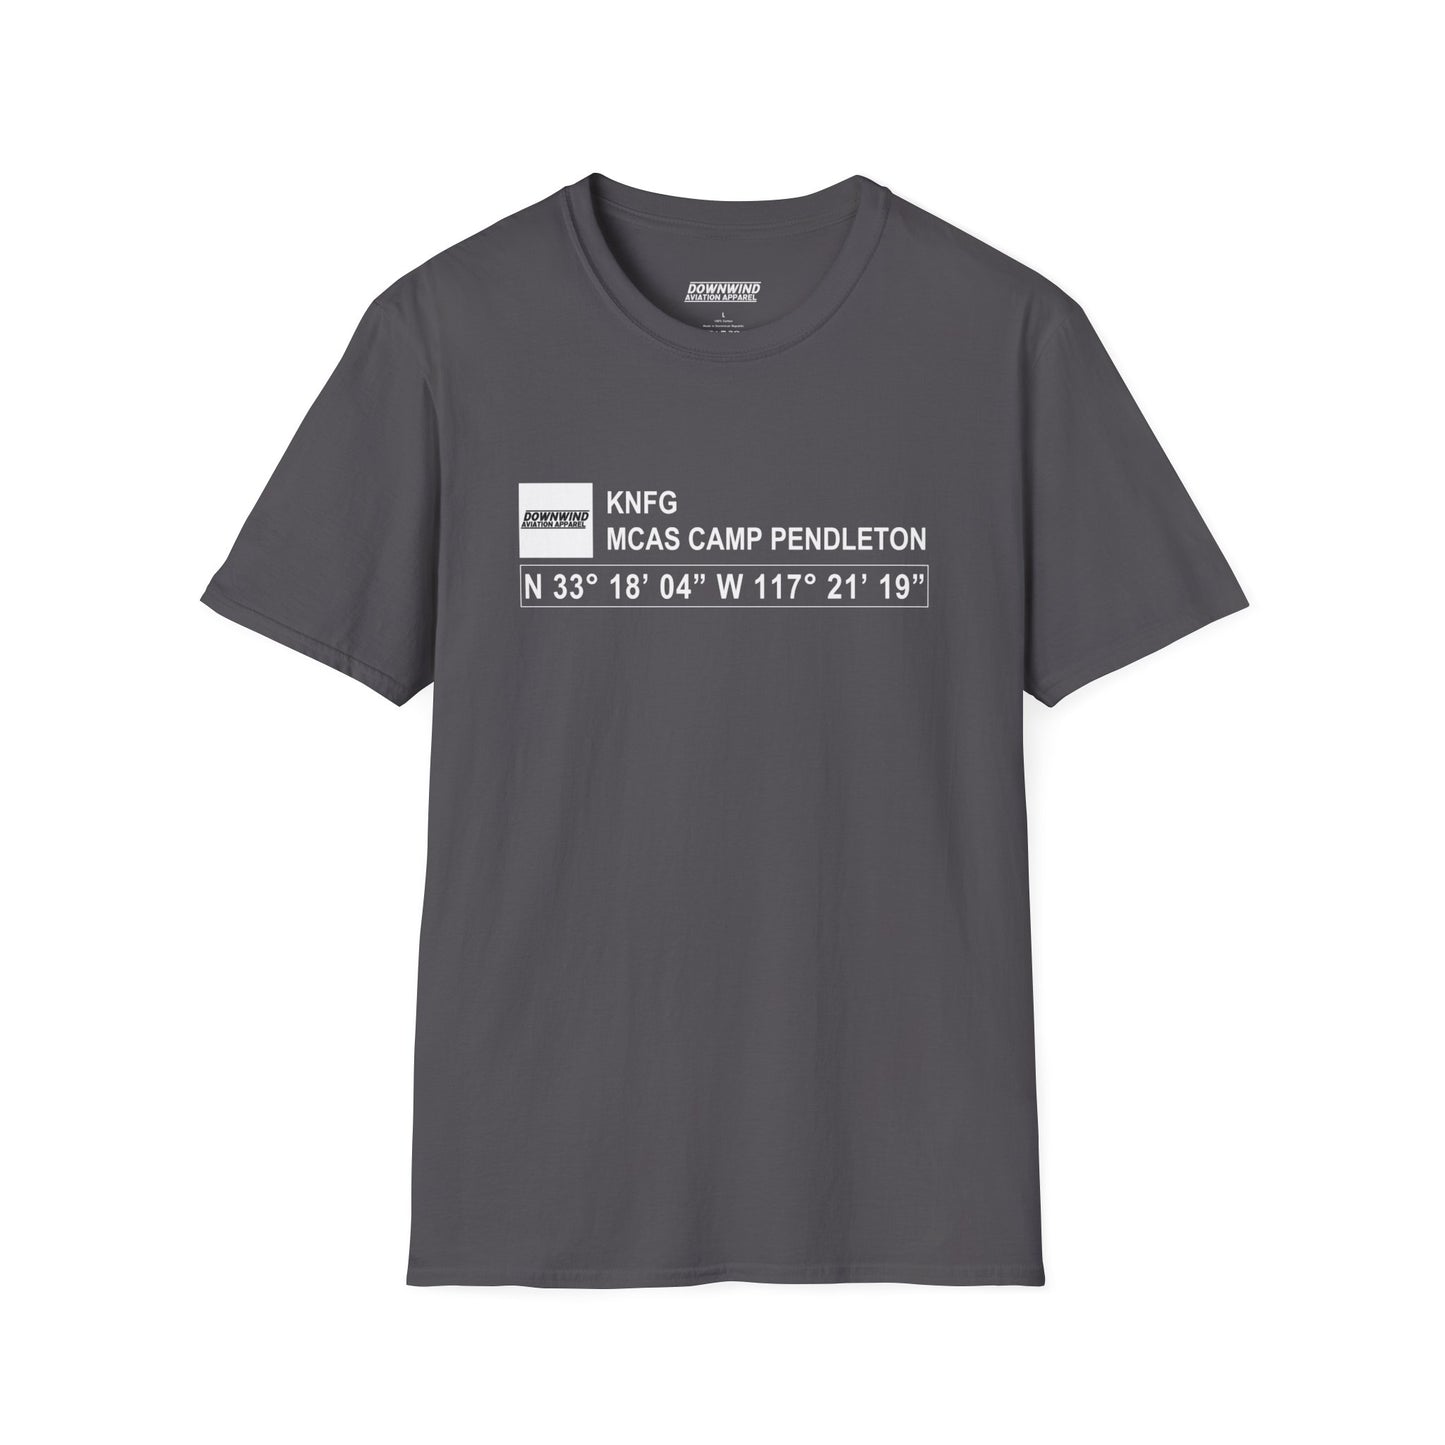 KNFG / MCAS Camp Pendleton T-Shirt